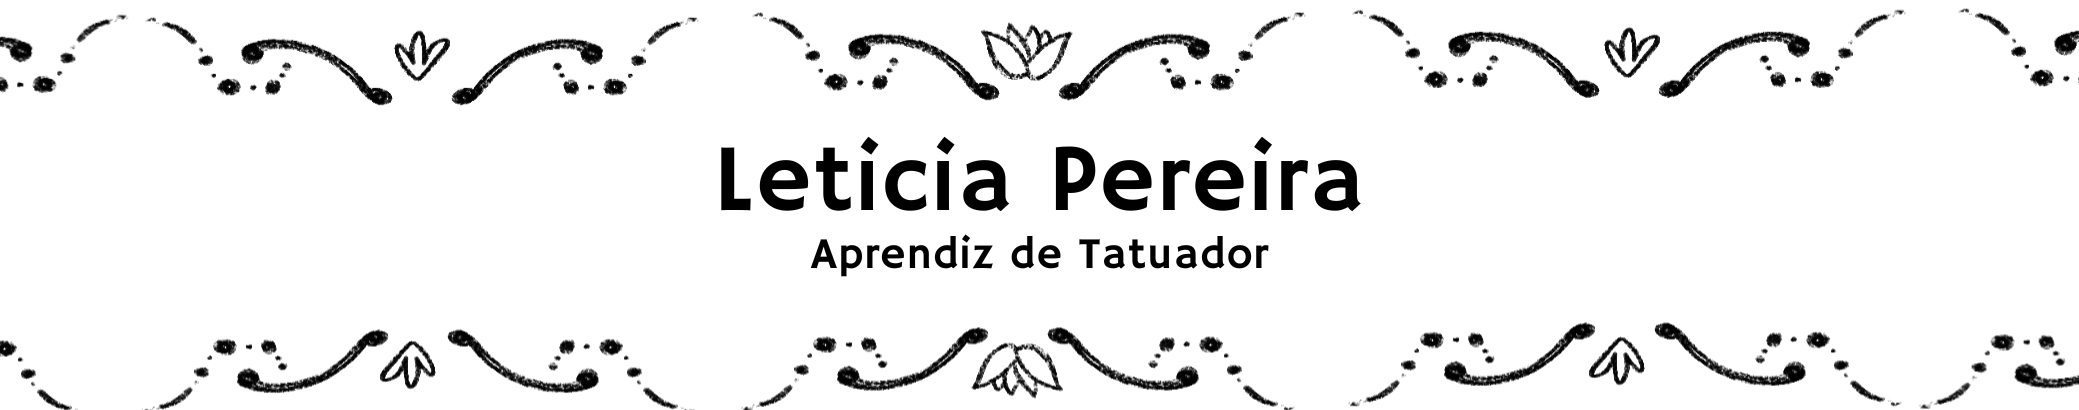 Leticia Pereira da Silva's profile banner